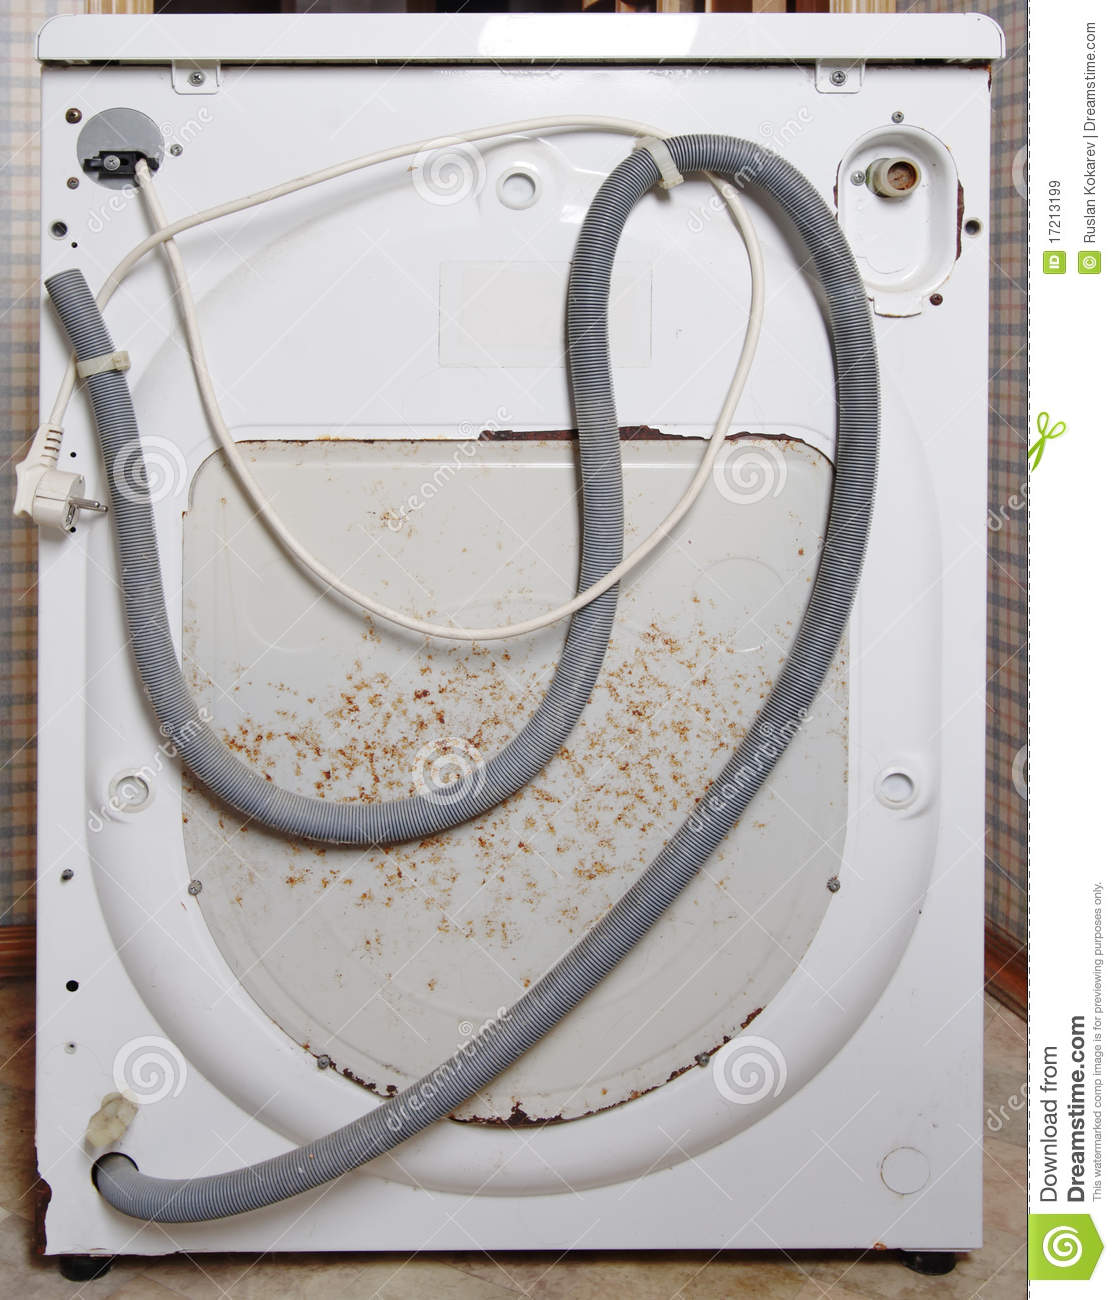 Broken Washing Machine  Royalty Free Stock Images   Image  17213199